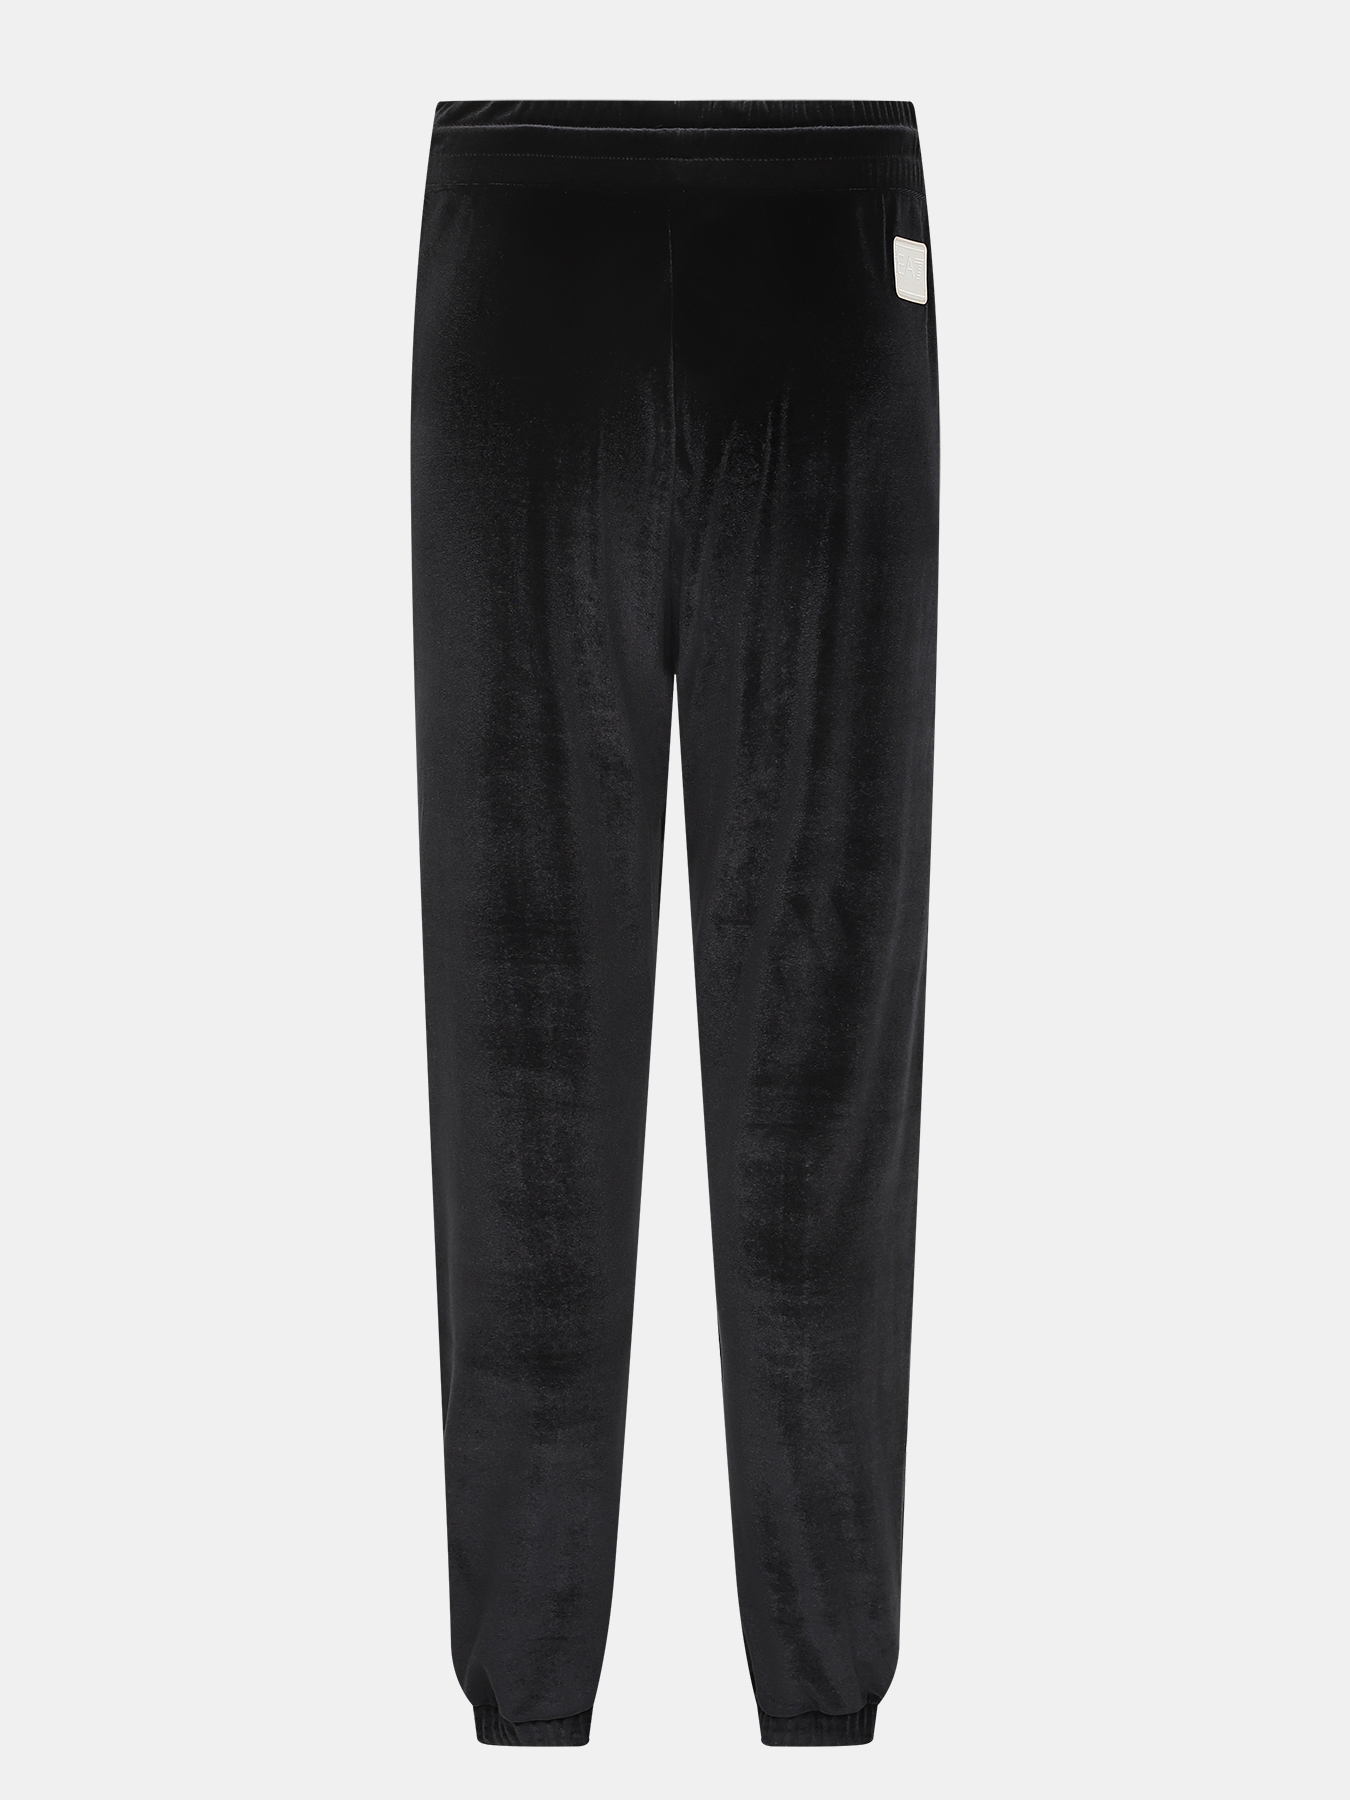 Спортивные брюки EA7 Emporio Armani 423041-042, цвет черный, размер 42-44 - фото 4